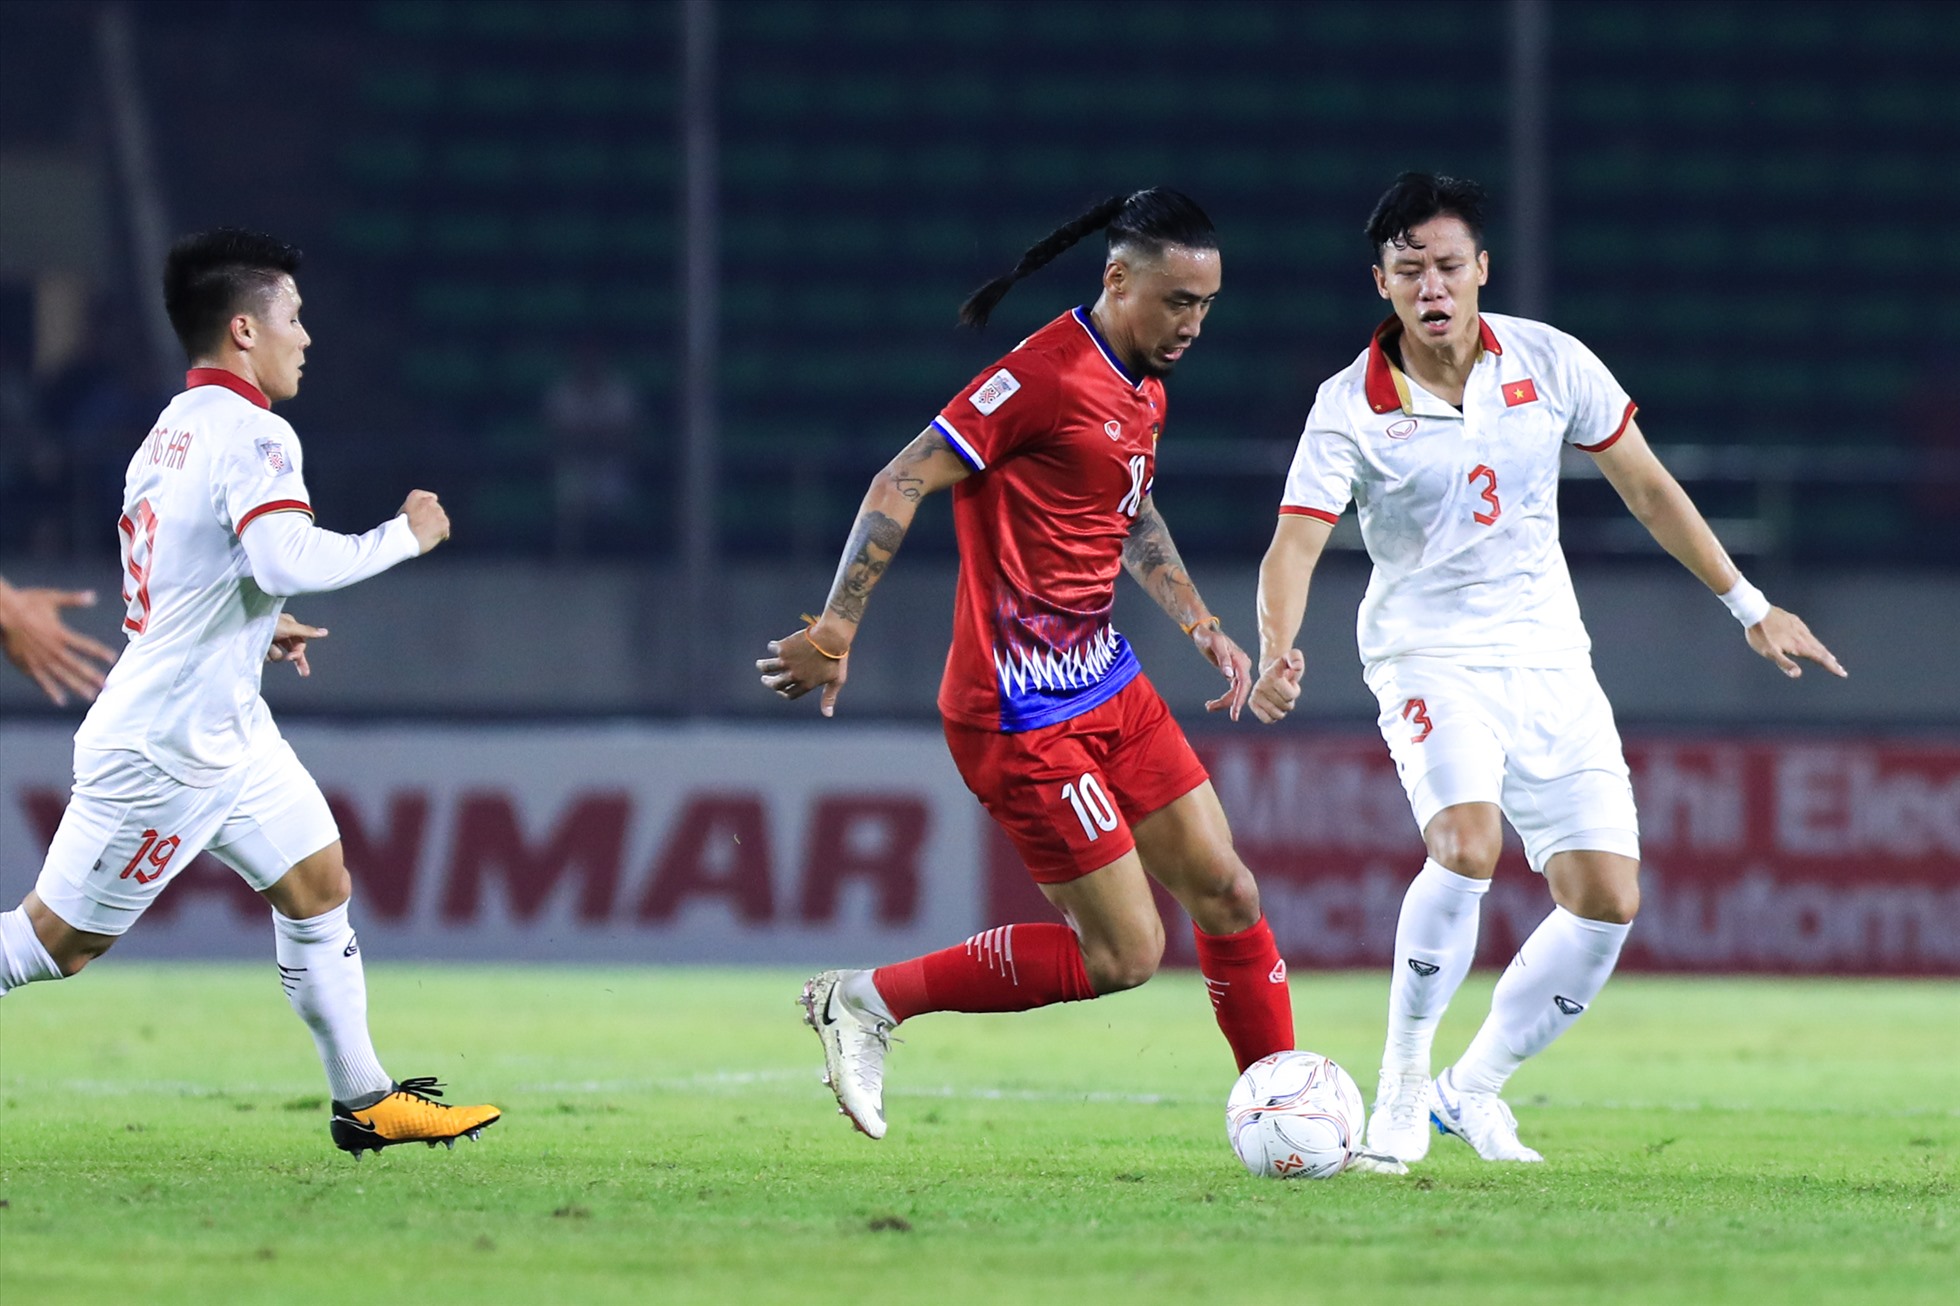 Hãy cùng theo dõi hình ảnh để cập nhật thông tin mới nhất về tuyển Lào và giải đấu AFF Cup.